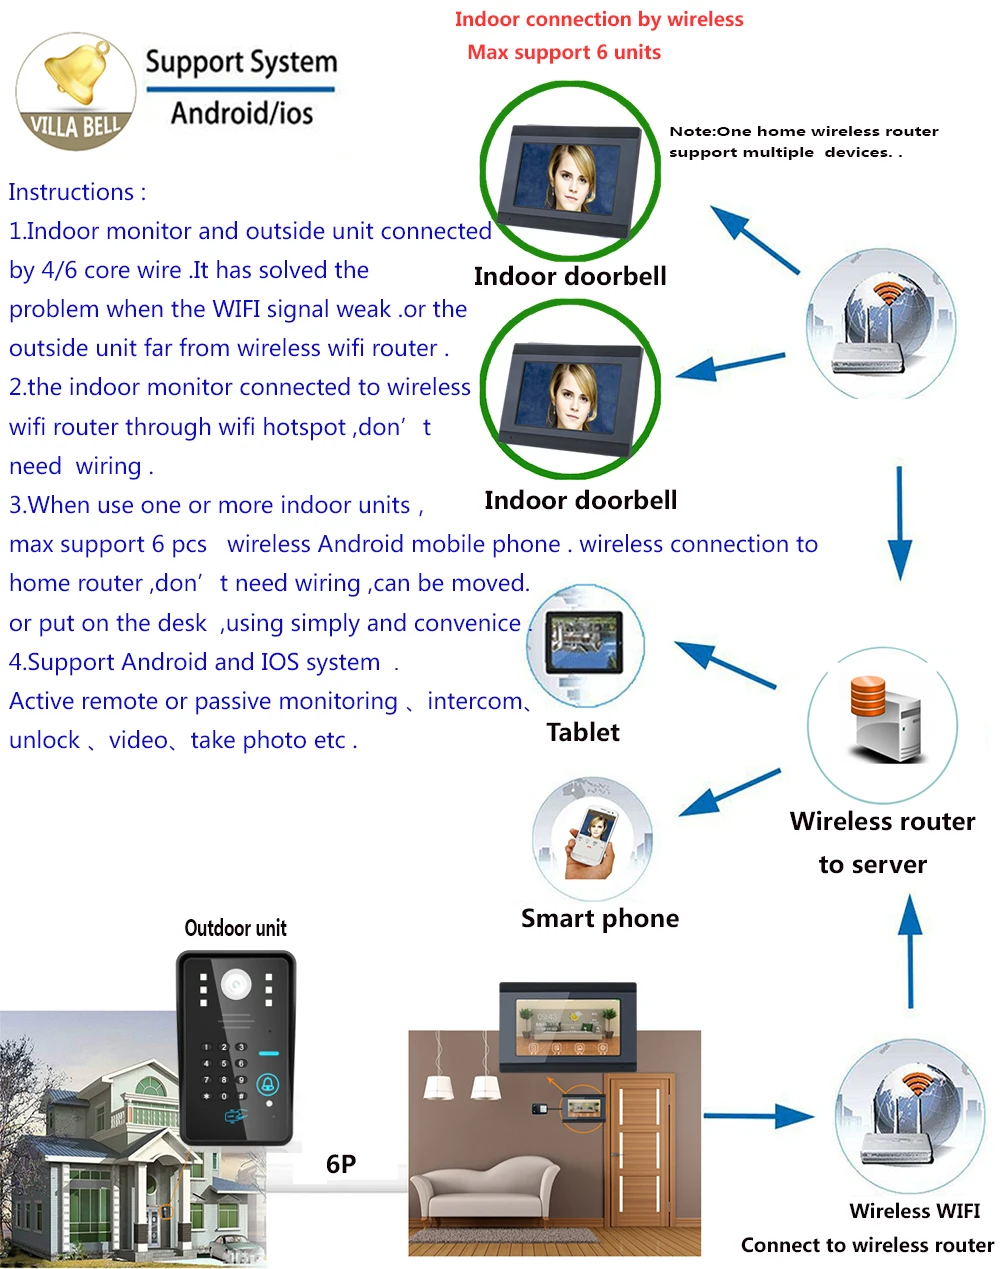 7 дюймов проводной/Беспроводной Wi-Fi RFID пароль видео-телефон двери дверной звонок Домофон Системы с Электрический магнитный замок + IR-CUT HD 1000TV